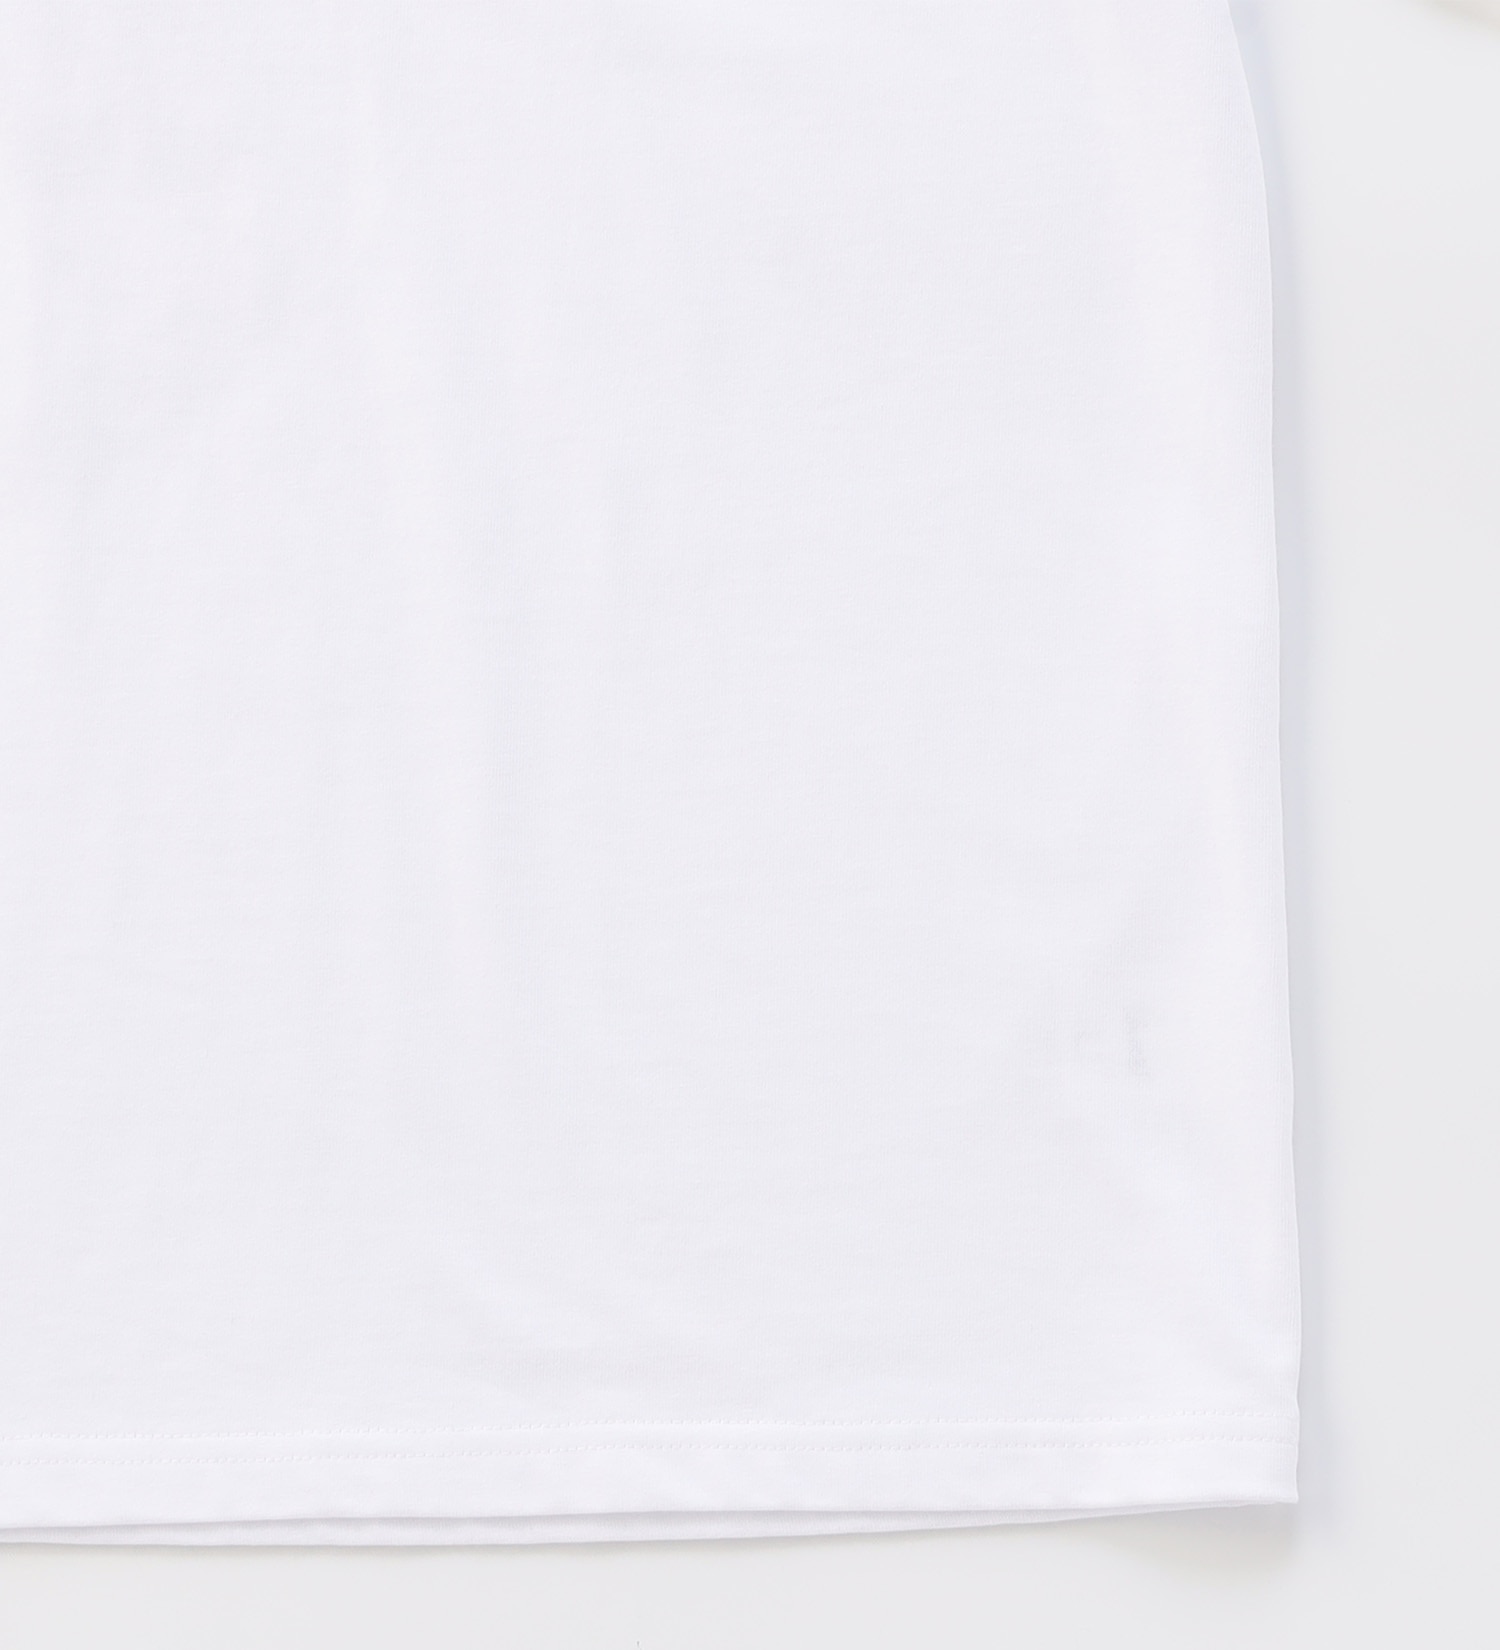 Lee(リー)の【GW SALE】【Lee GOLF】バックプリント半袖Tシャツ|トップス/Tシャツ/カットソー/メンズ|ホワイト